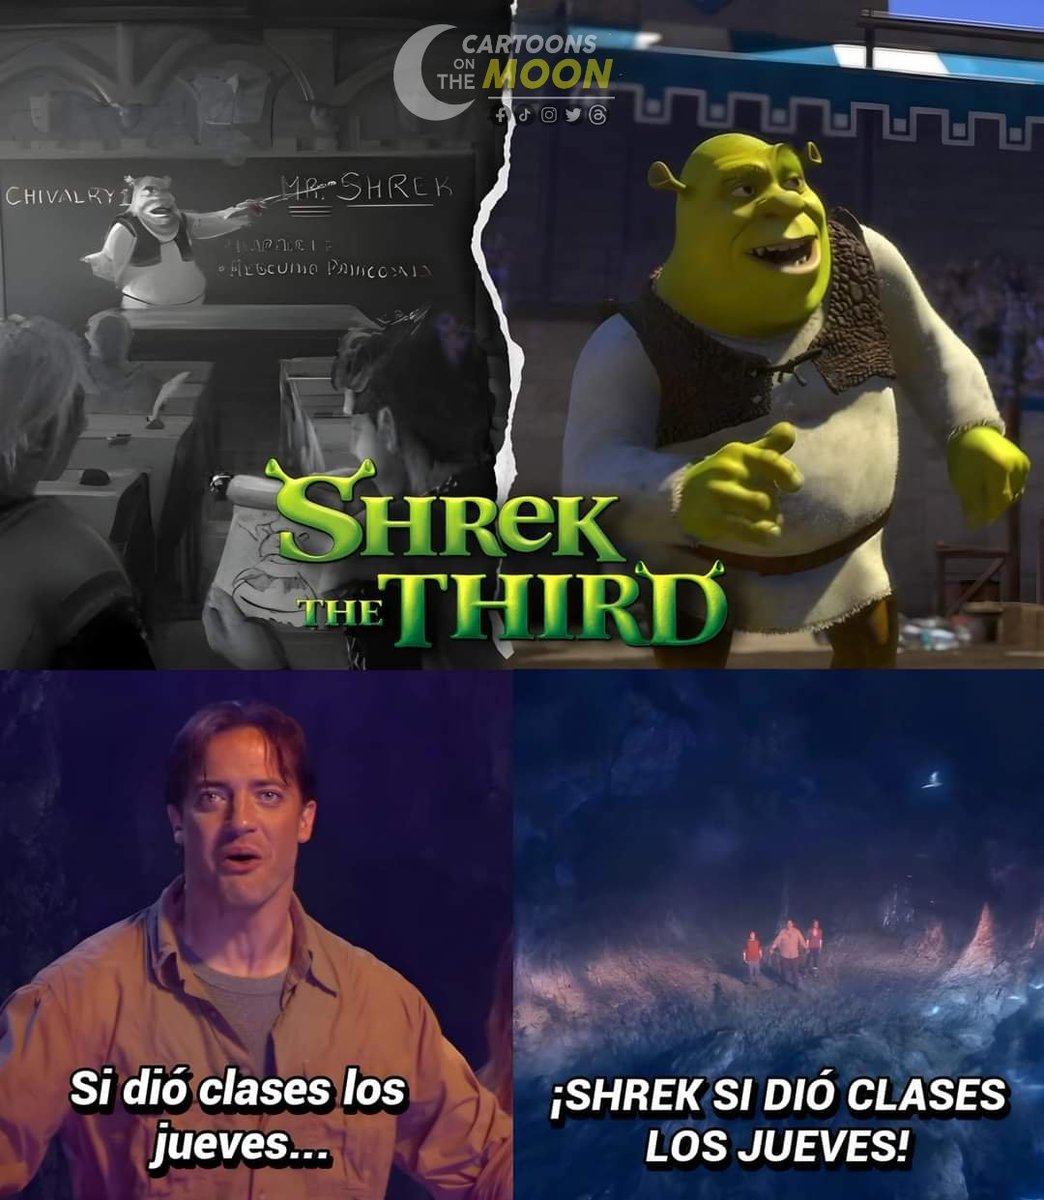 En Shrek Tercero, veríamos a Shrek infiltrarse en la escuela de Arturo como un profesor. Y la clase que daría, sería la materia de 'Rescate de Princesas'. Así que estuvimos a punto de ver a Shrek dar clases los jueves y sin cobrar mucho.